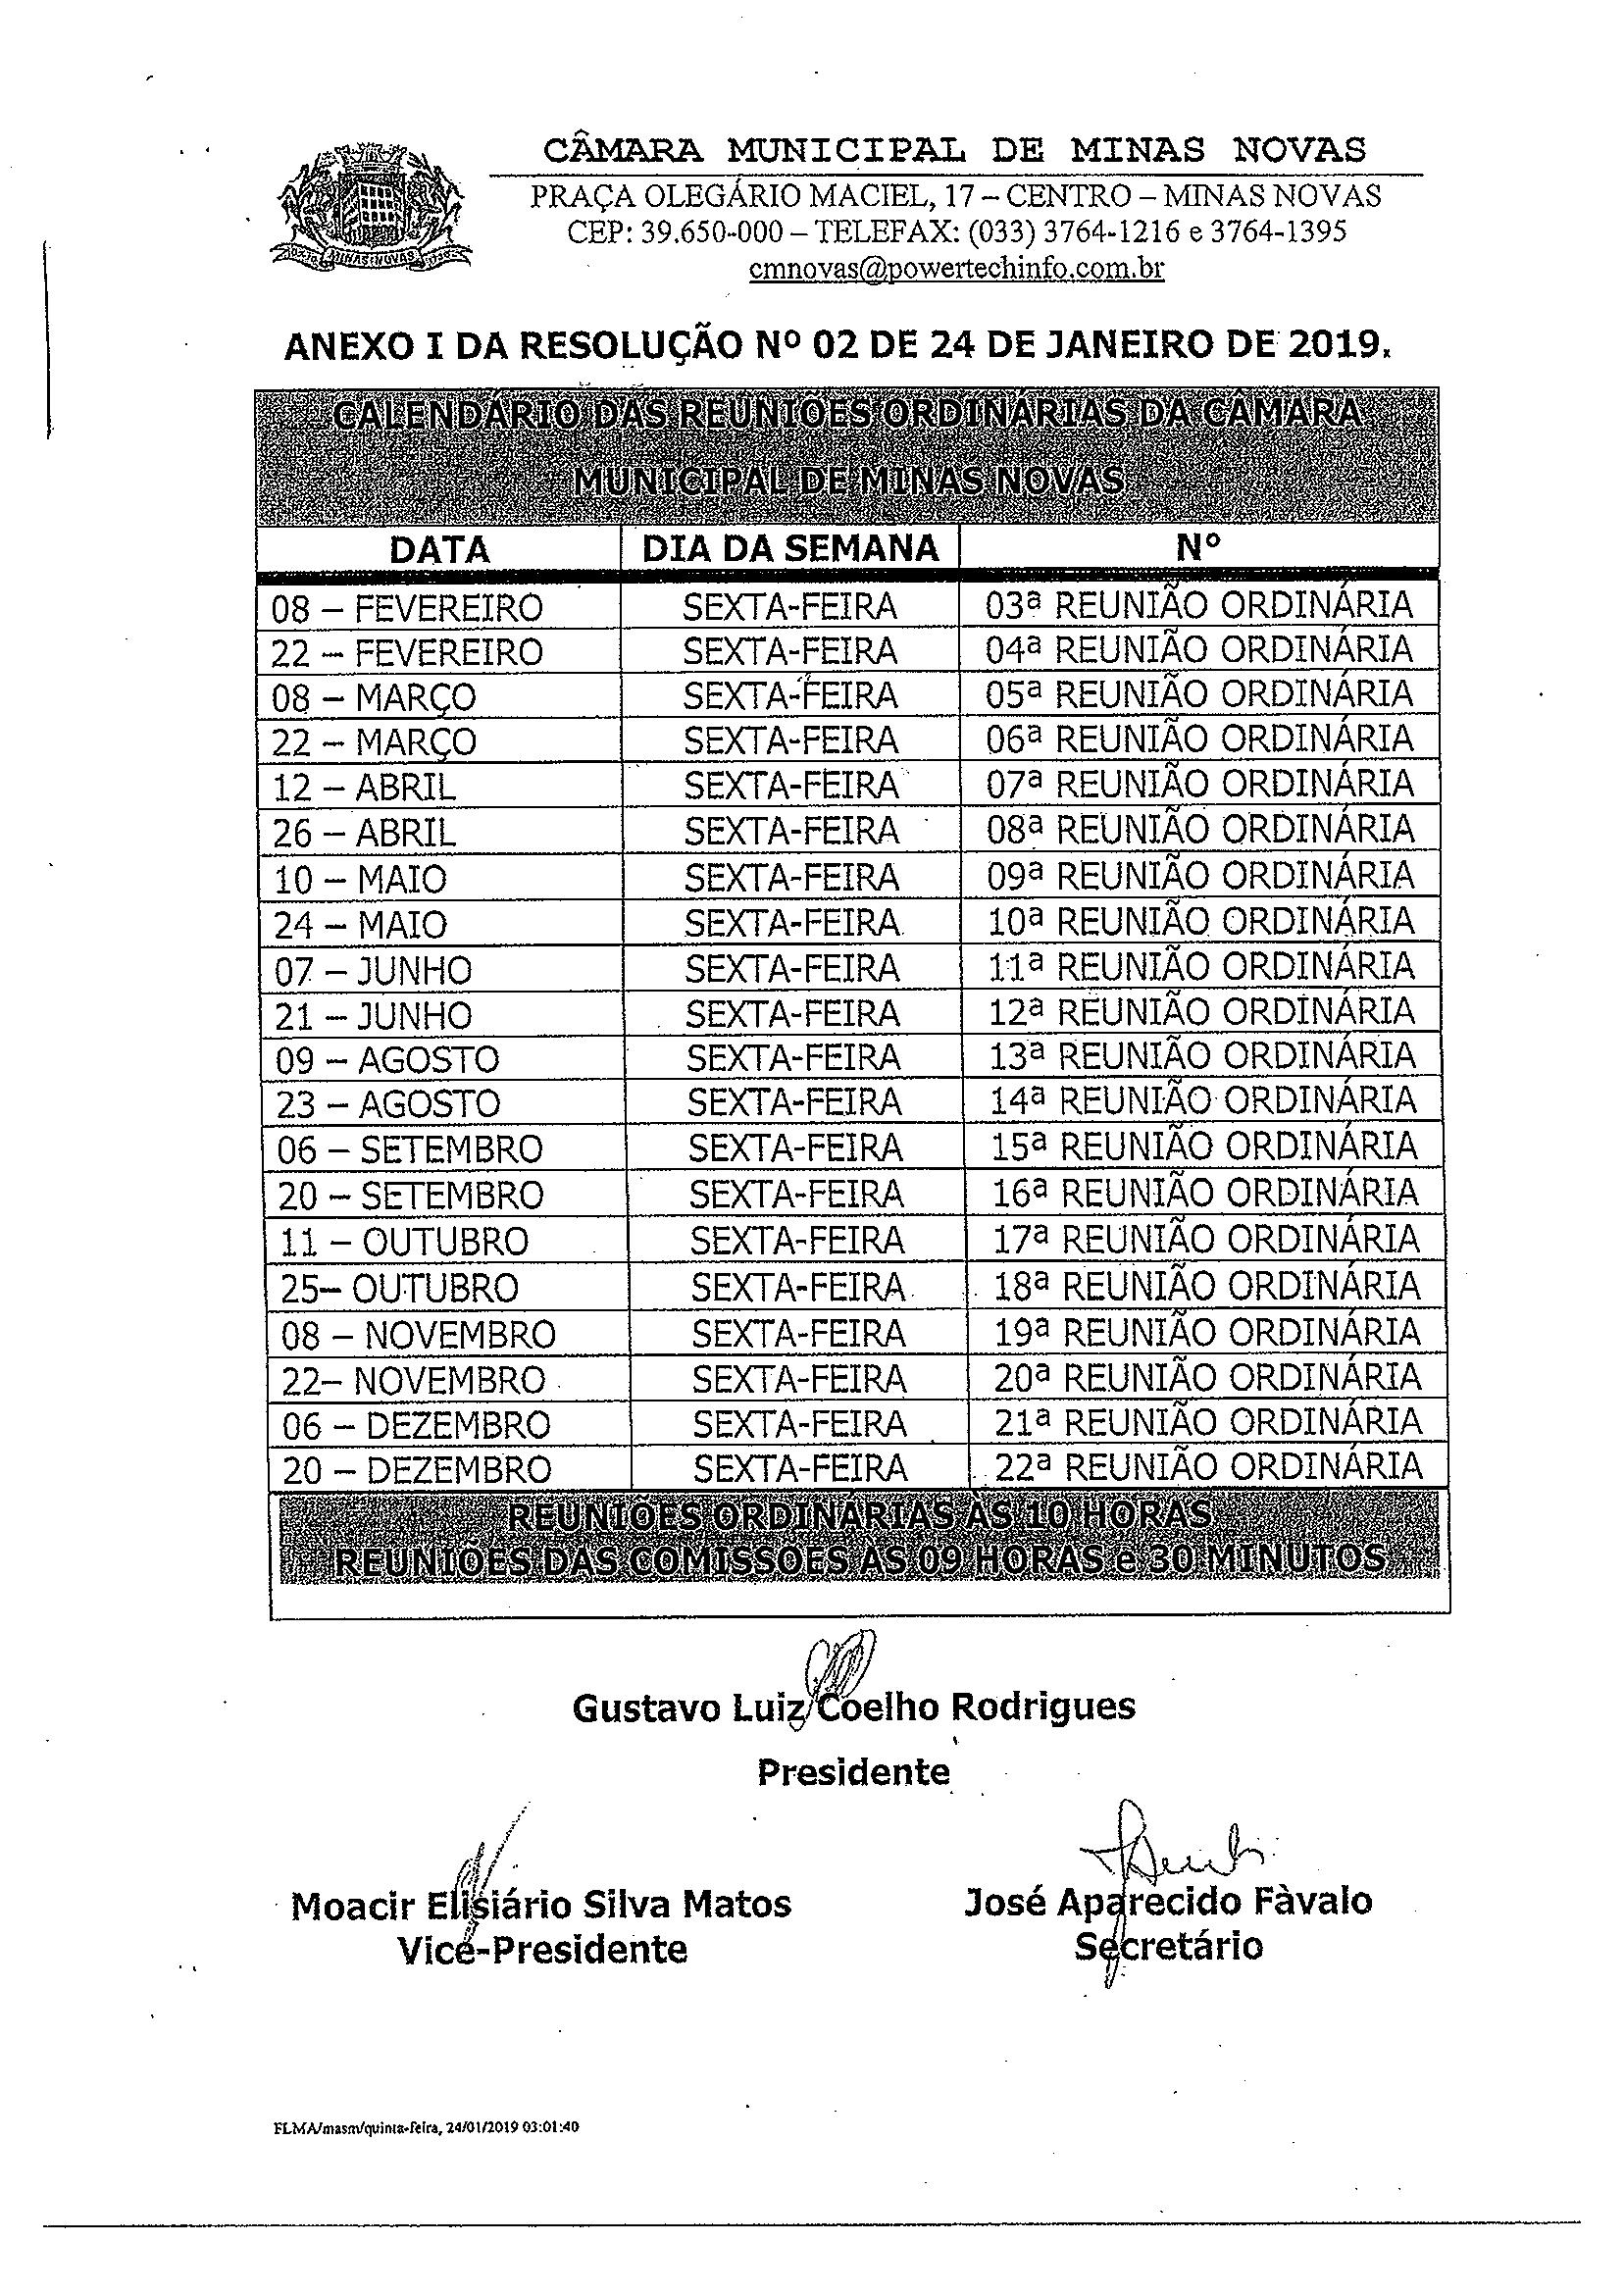 Calendário das Reuniões Ordinárias da Câmara Municipal de Minas Novas (Exercício de 2019)